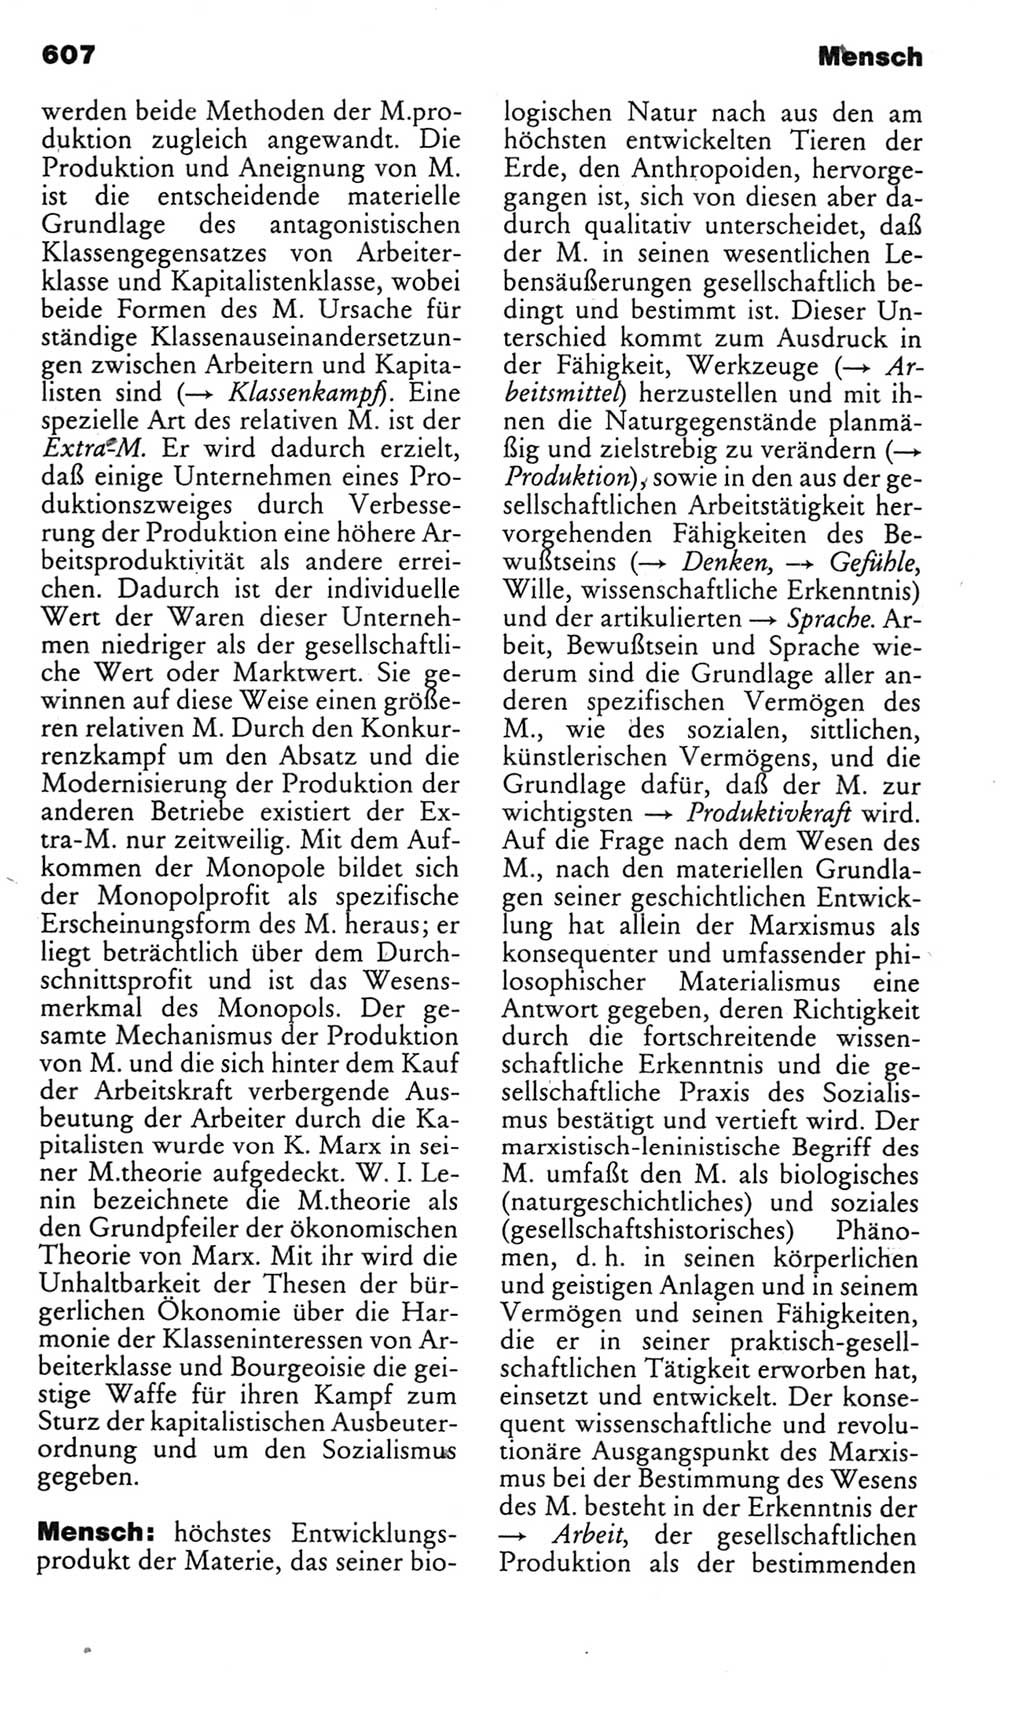 Kleines politisches Wörterbuch [Deutsche Demokratische Republik (DDR)] 1985, Seite 607 (Kl. pol. Wb. DDR 1985, S. 607)